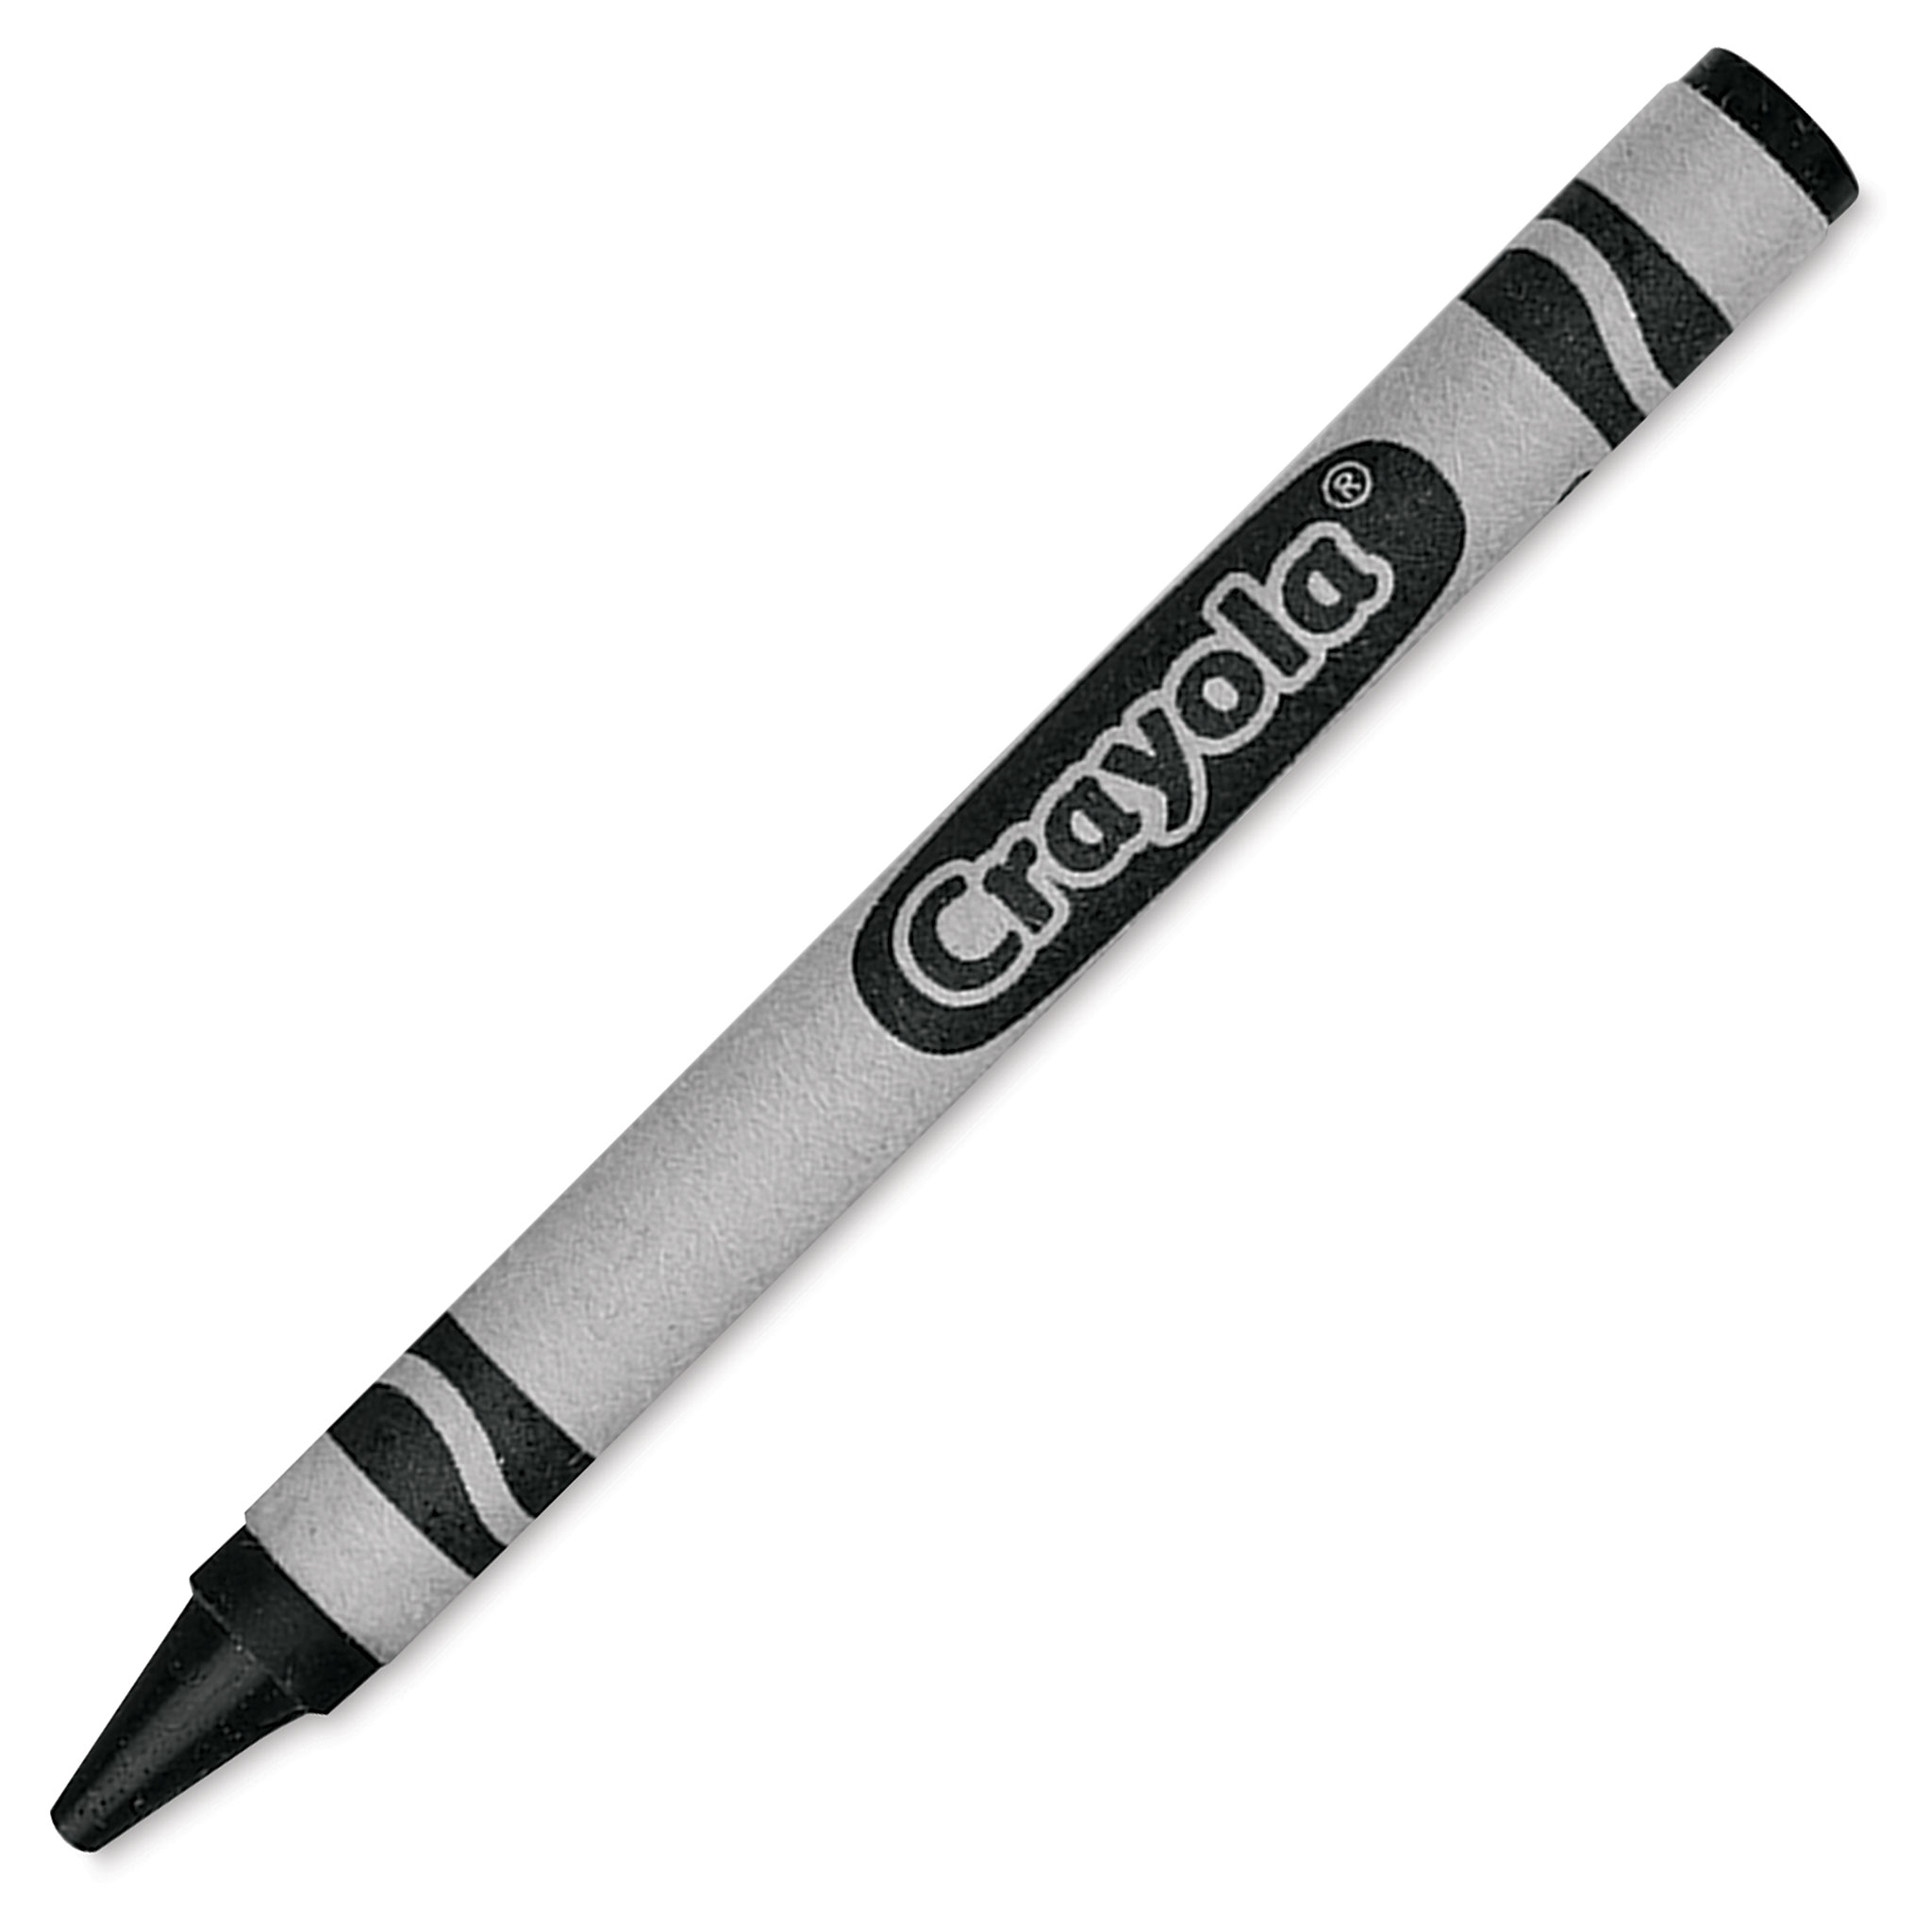  Crayola Single Color Crayon, 12 Count Box, Black; no